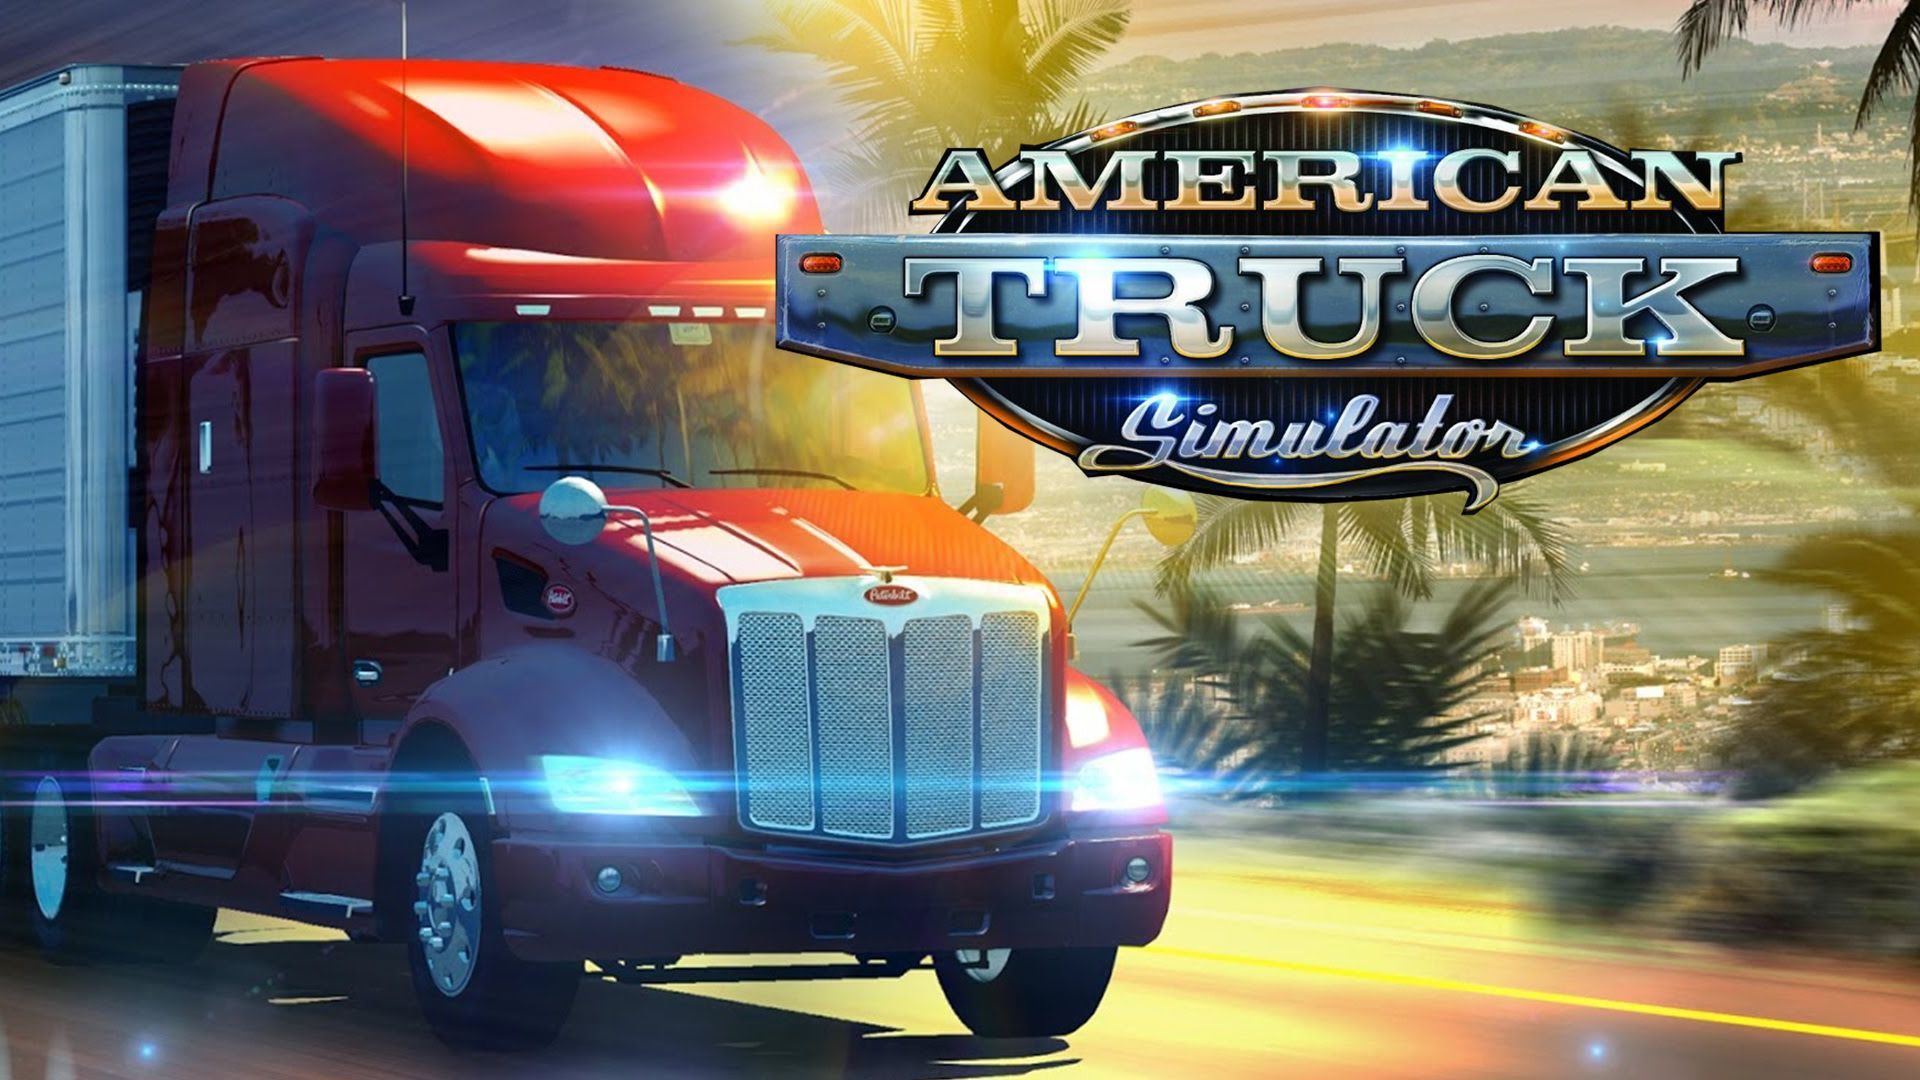 American Truck Simulator. PC Mac Linux Steam Game